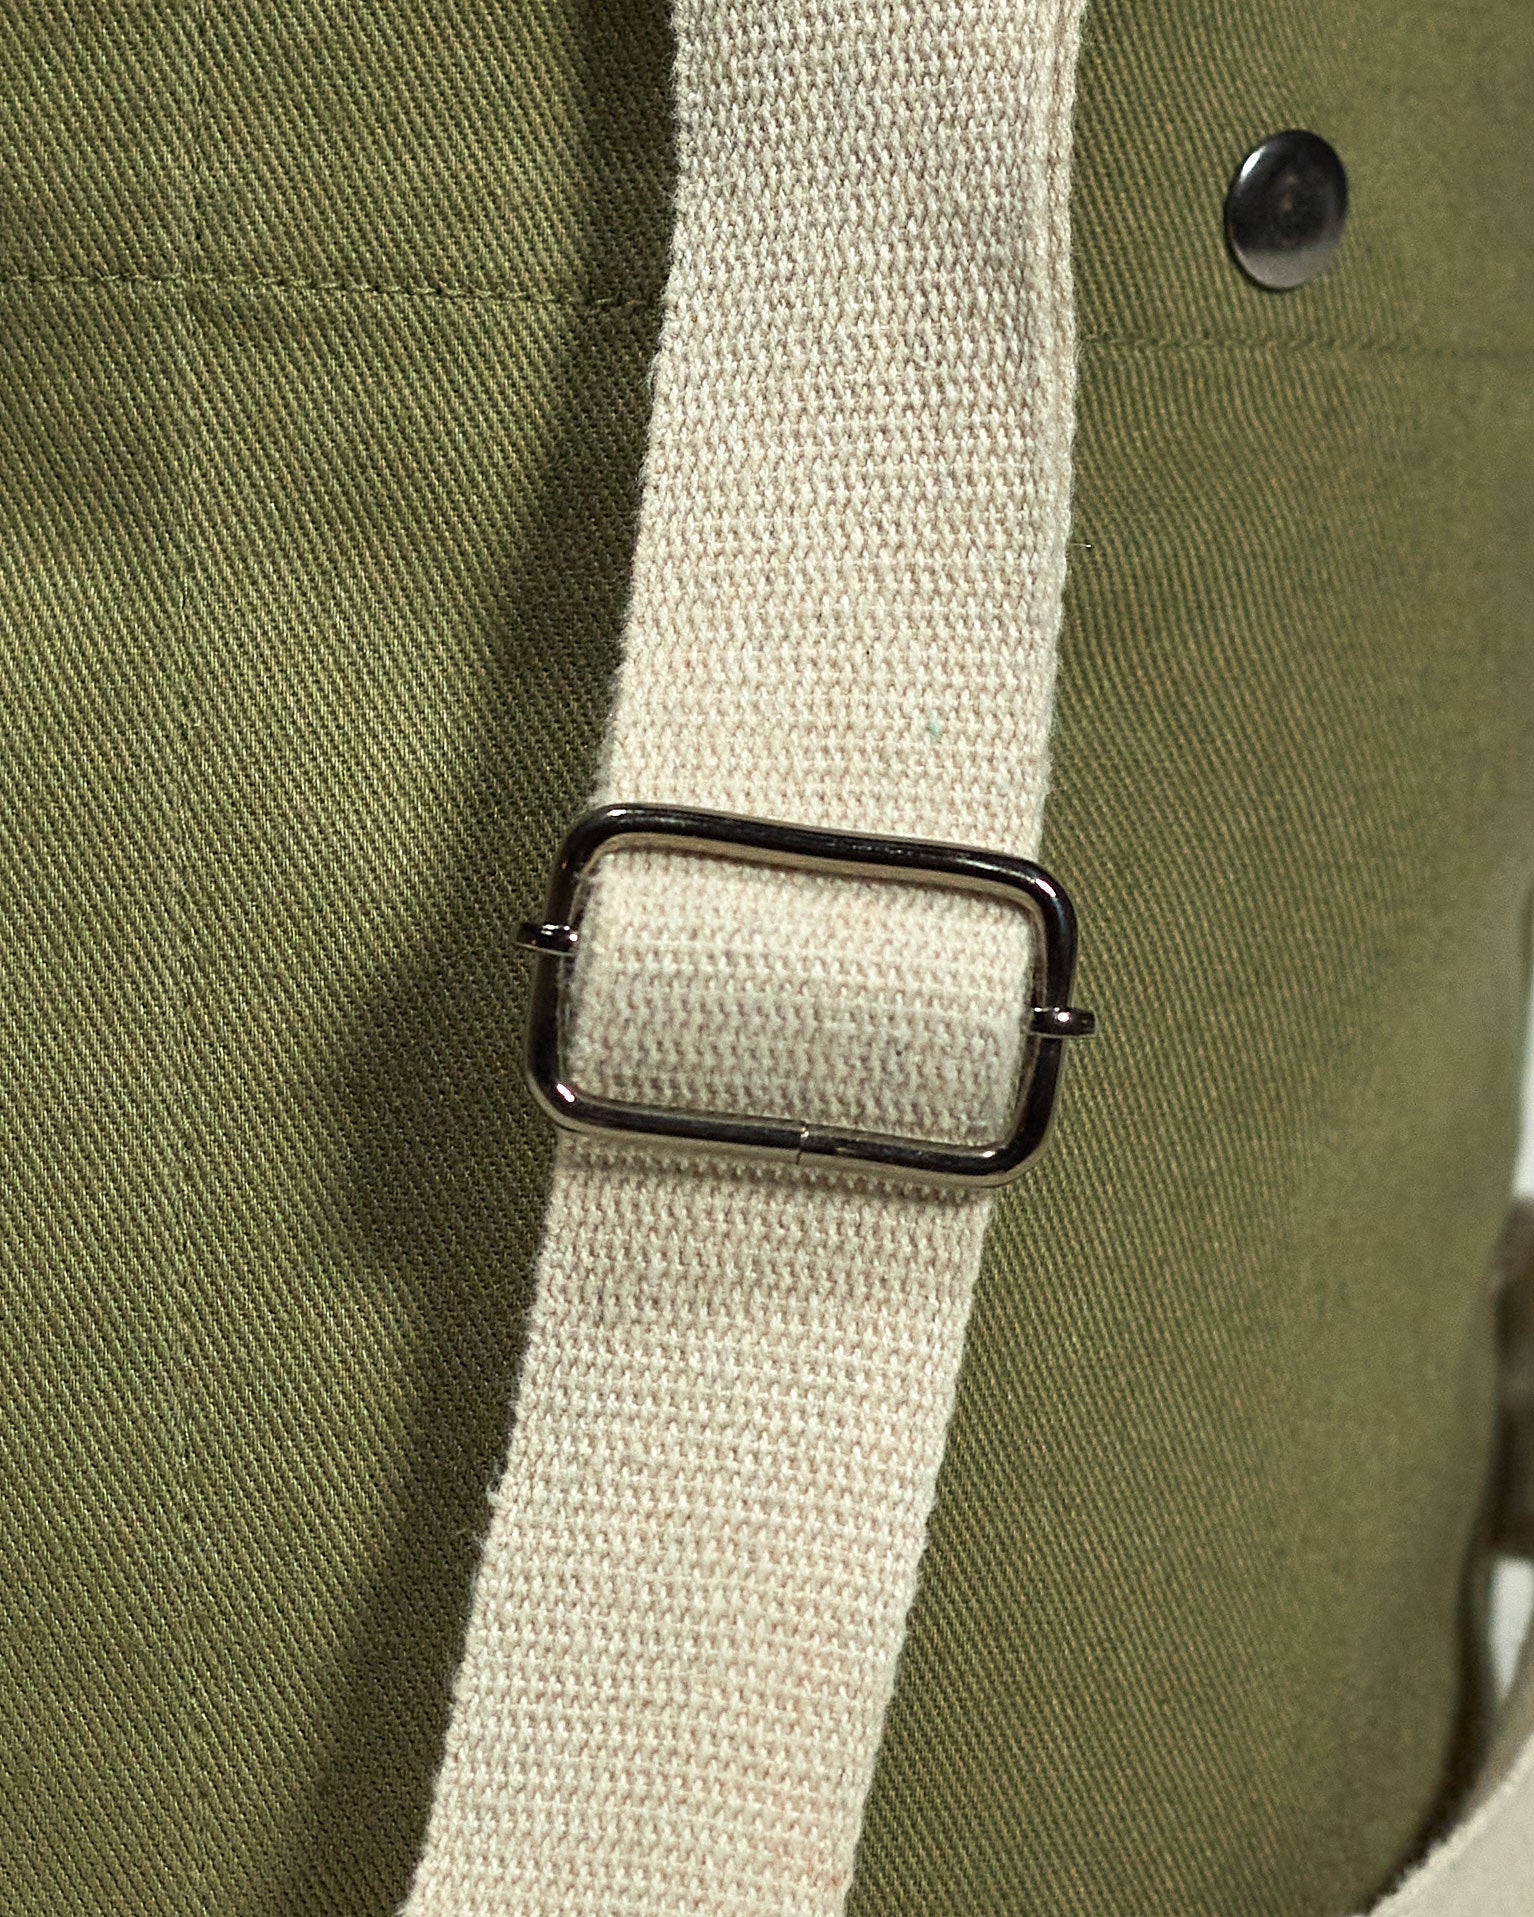 Focus on adjustable, extra strong natural cotton webbing shoulder strap of Uskees #0402 bucket bag.